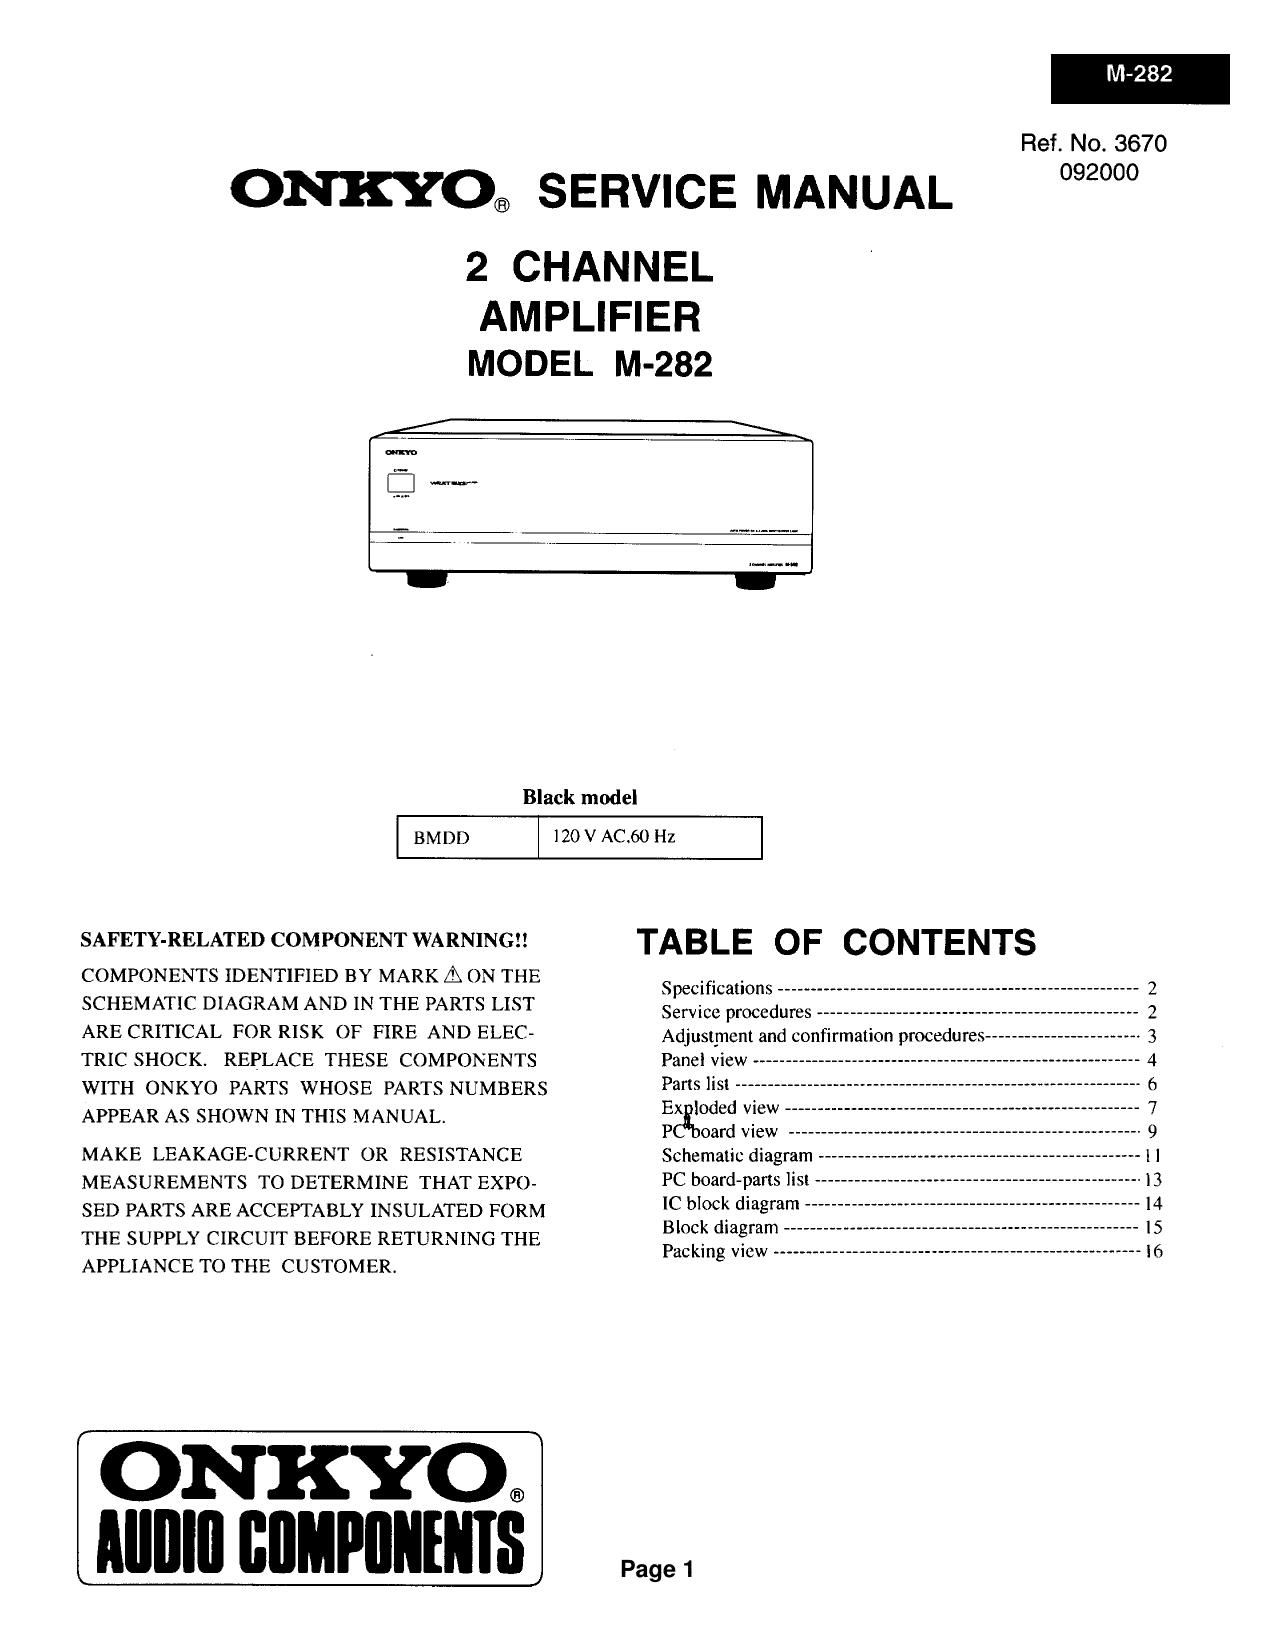 Onkyo M 282 Service Manual 2